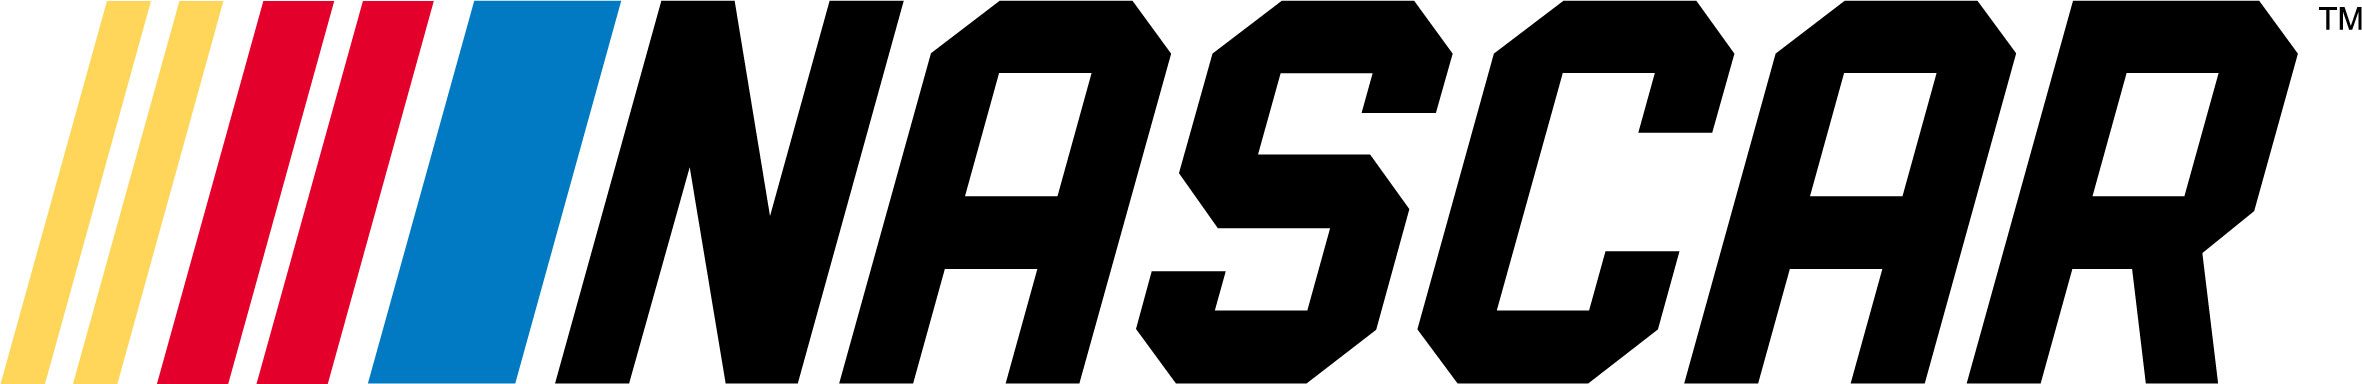 New-NASCAR-Logo.jpg